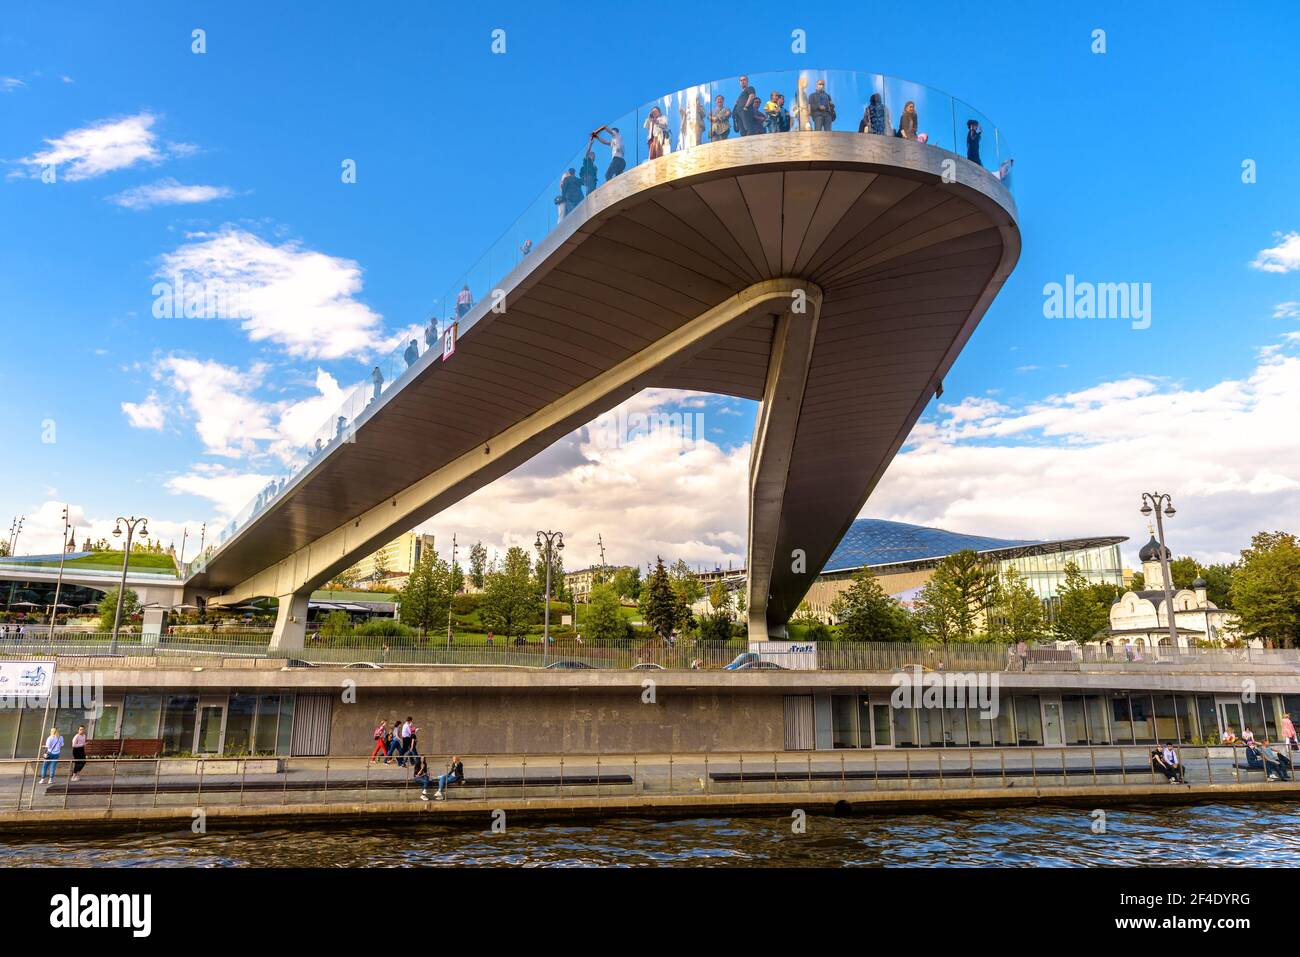 Mosca - 21 agosto 2020: Ponte galleggiante nel Parco Zaryadye, Mosca, Russia. Questo posto e' famoso per le attrazioni turistiche della citta'. La gente si trova su Amazing urb Foto Stock